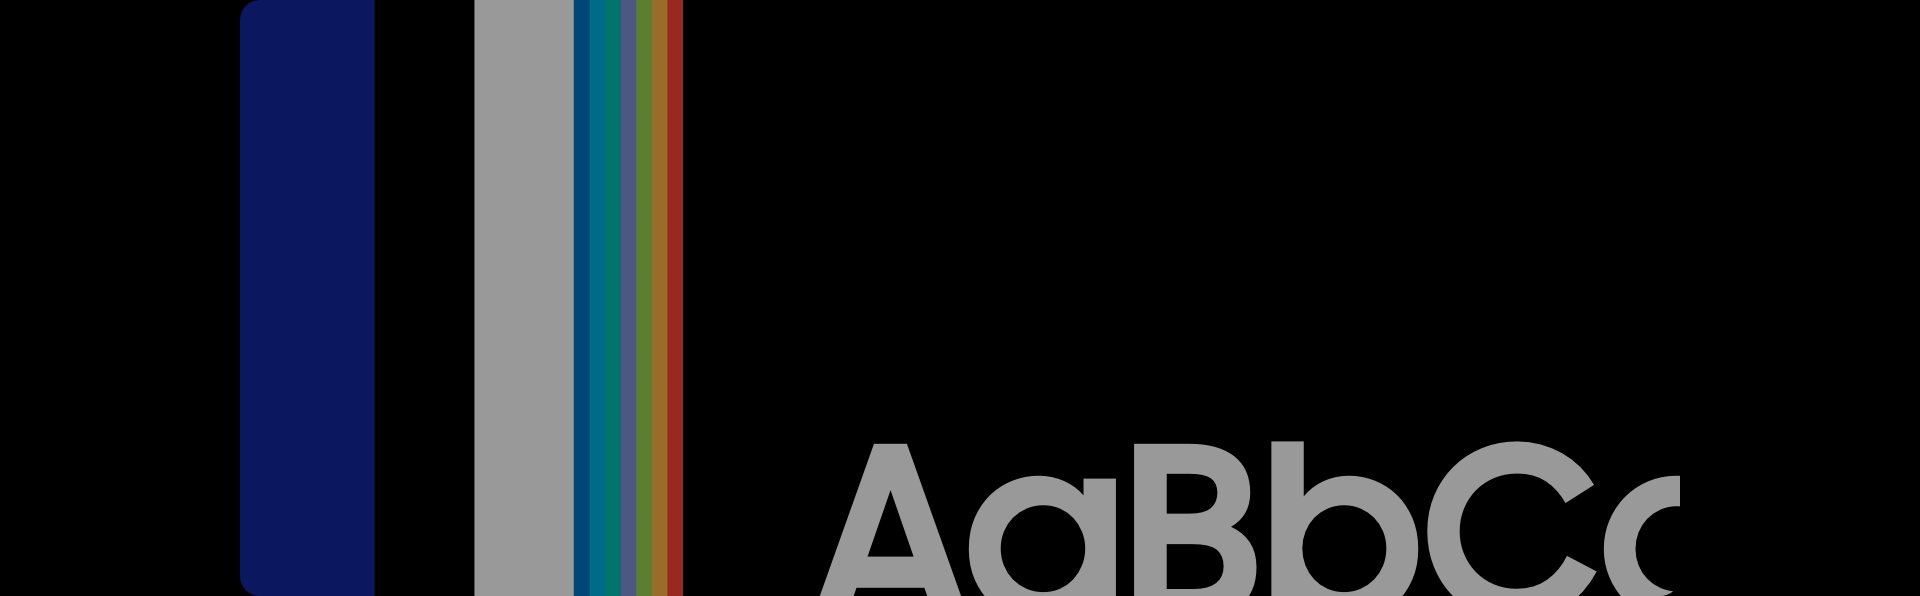 En la parte superior de la imagen aparecen rayas verticales en azul, negro y blanco de Samsung: las marcas de Samsung. Junto a las rayas de color rojo, aparece "AaBbCc" en un cuadrado de color negro.